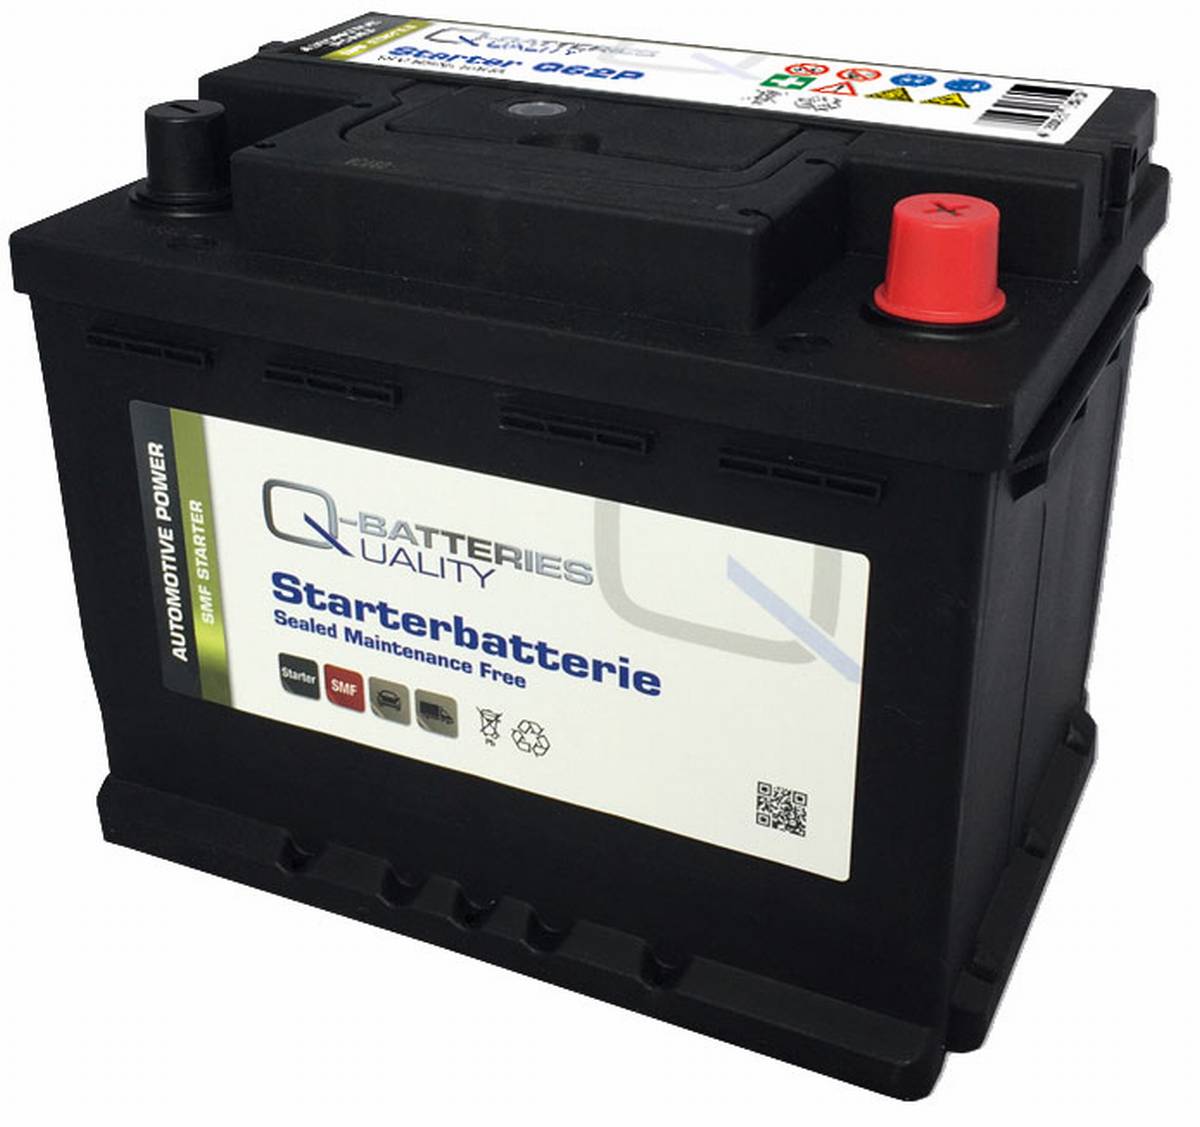 Q-Batteries Autobatterie Q62P 12V 62Ah 590A, wartungsfrei, Starterbatterie, Boot, Batterien für